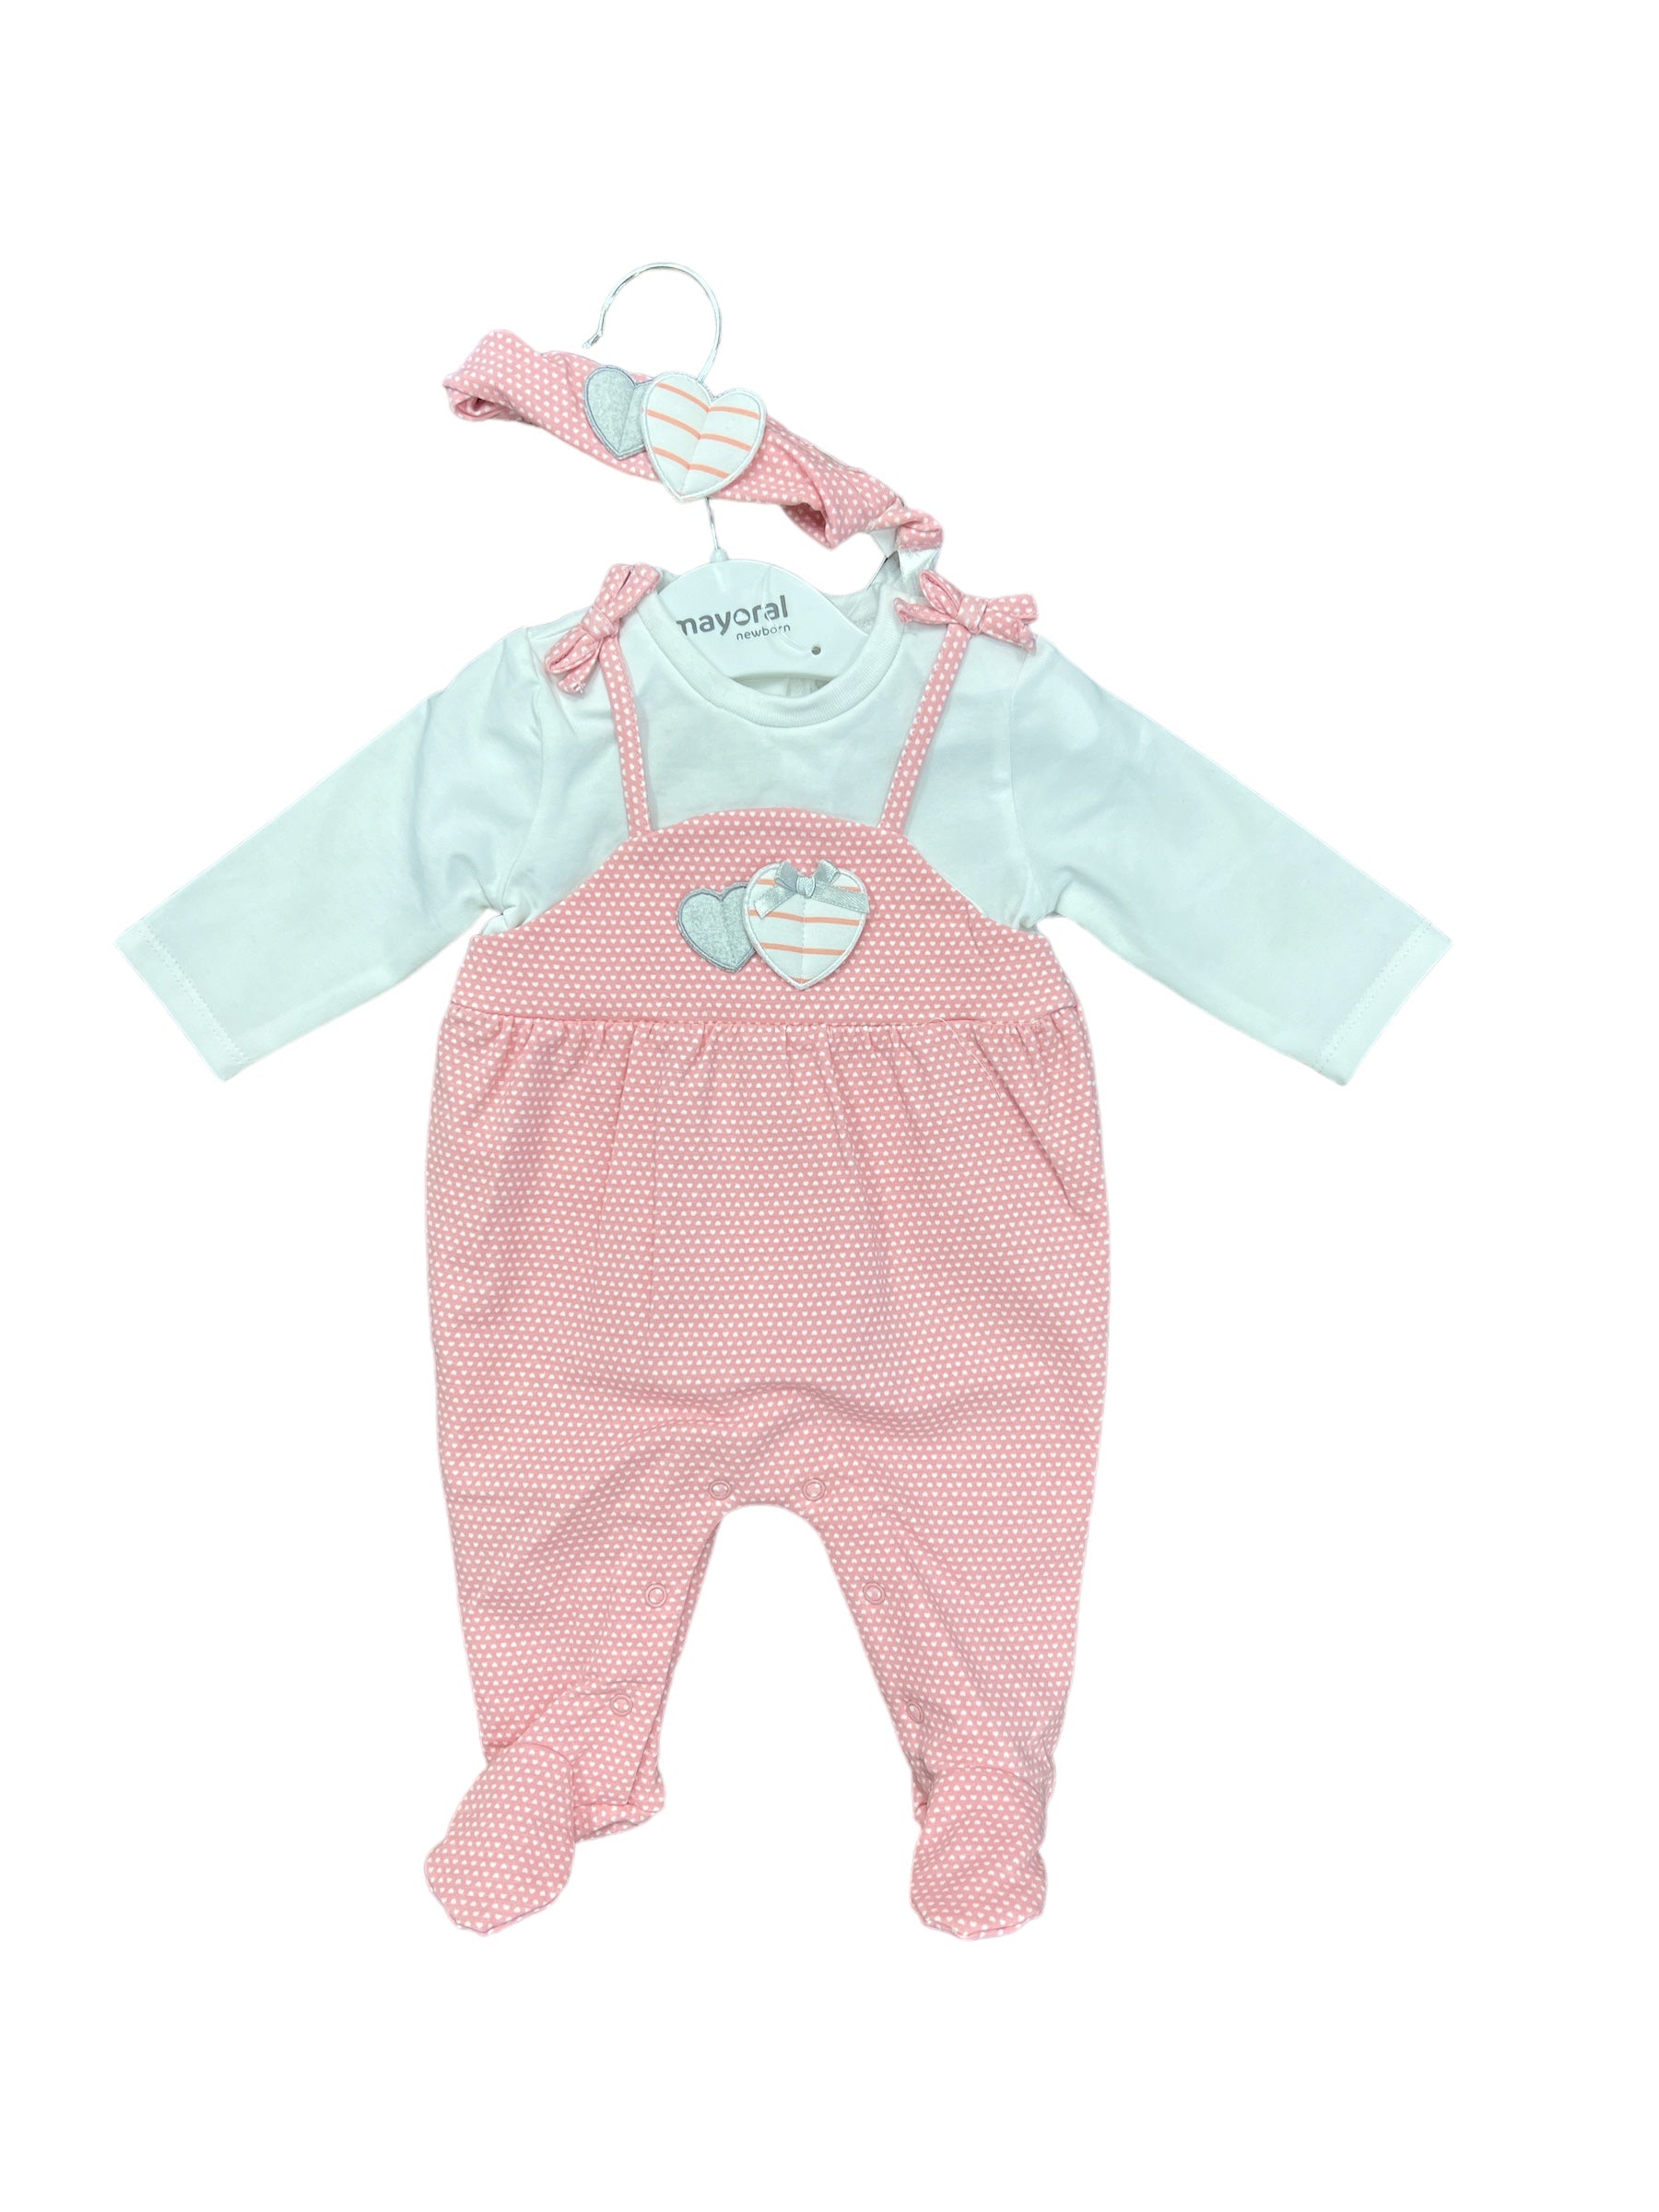 Heart Long Onsie-520 Baby & Kids Gifts-Simply Stylish Boutique-Simply Stylish Boutique | Women’s & Kid’s Fashion | Paducah, KY